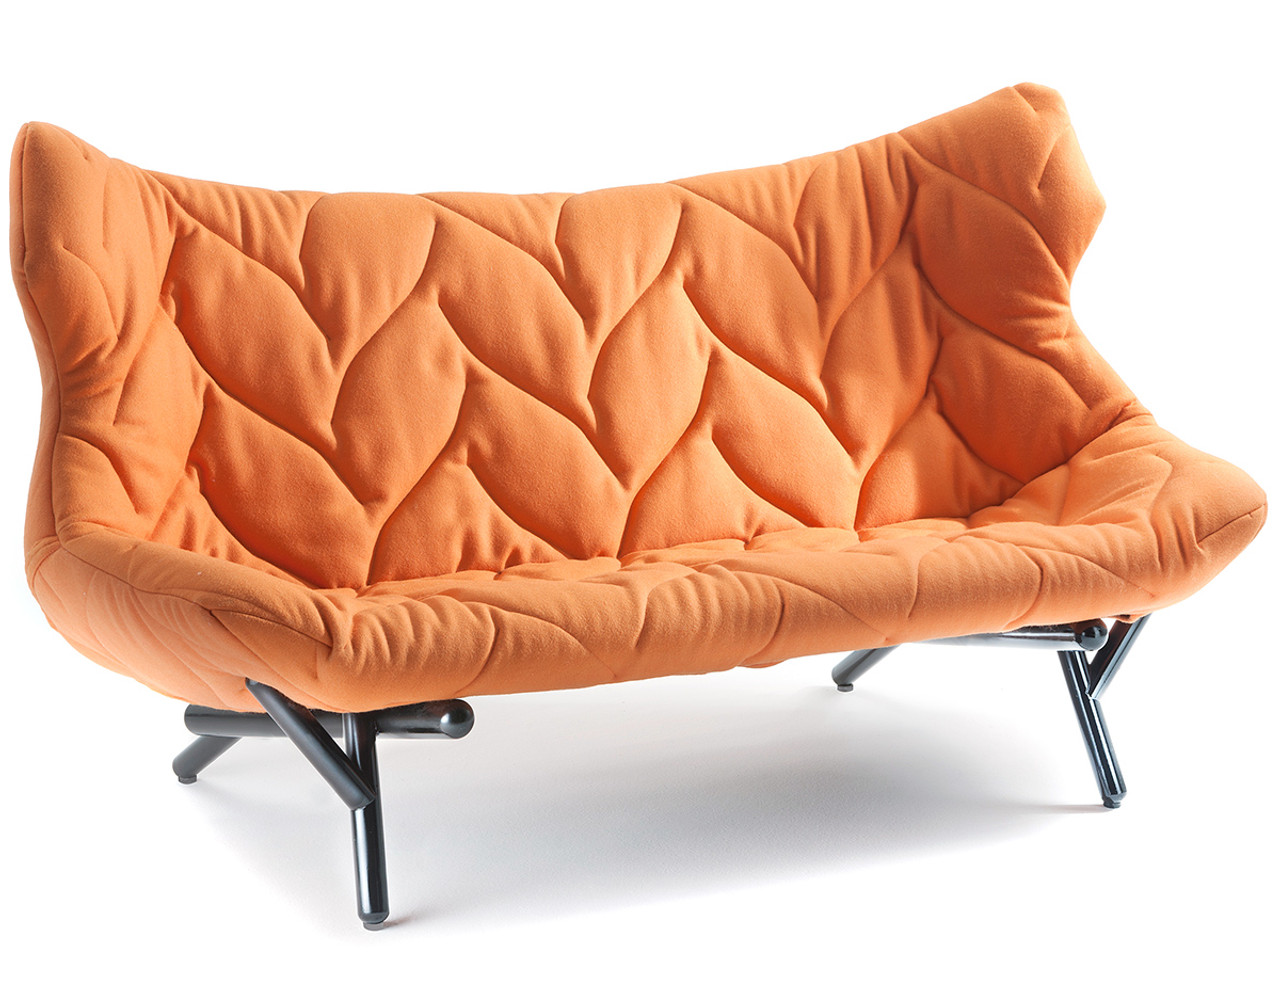 Foliage Sofa, Designed by Patricia Urquiola